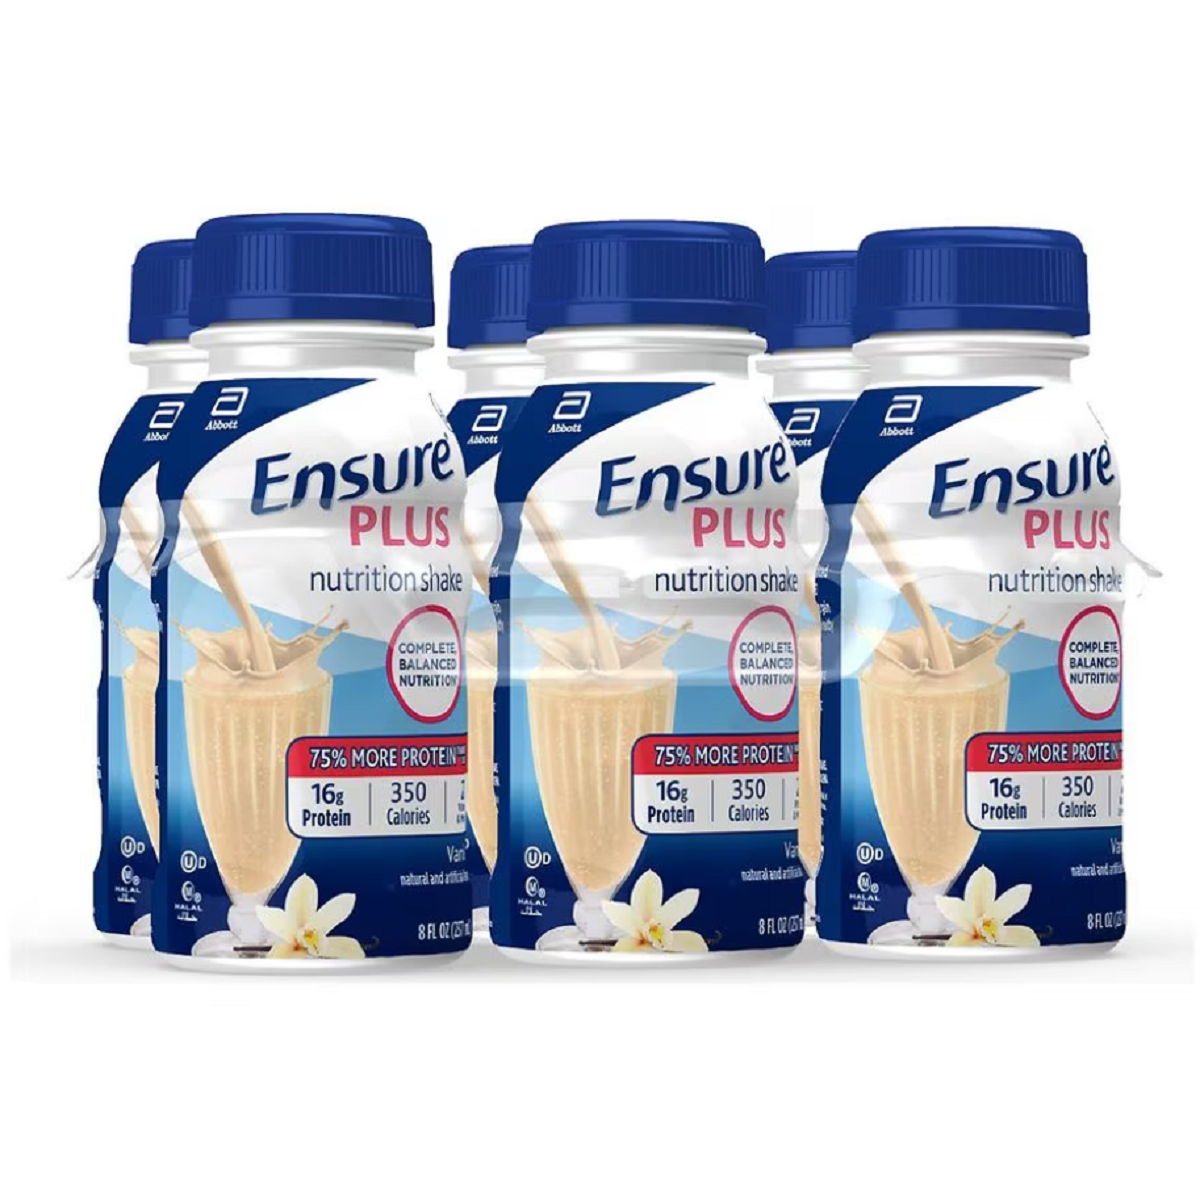 Nutrition Shake Vanilla8.0fl oz x 6 pack, Ensure